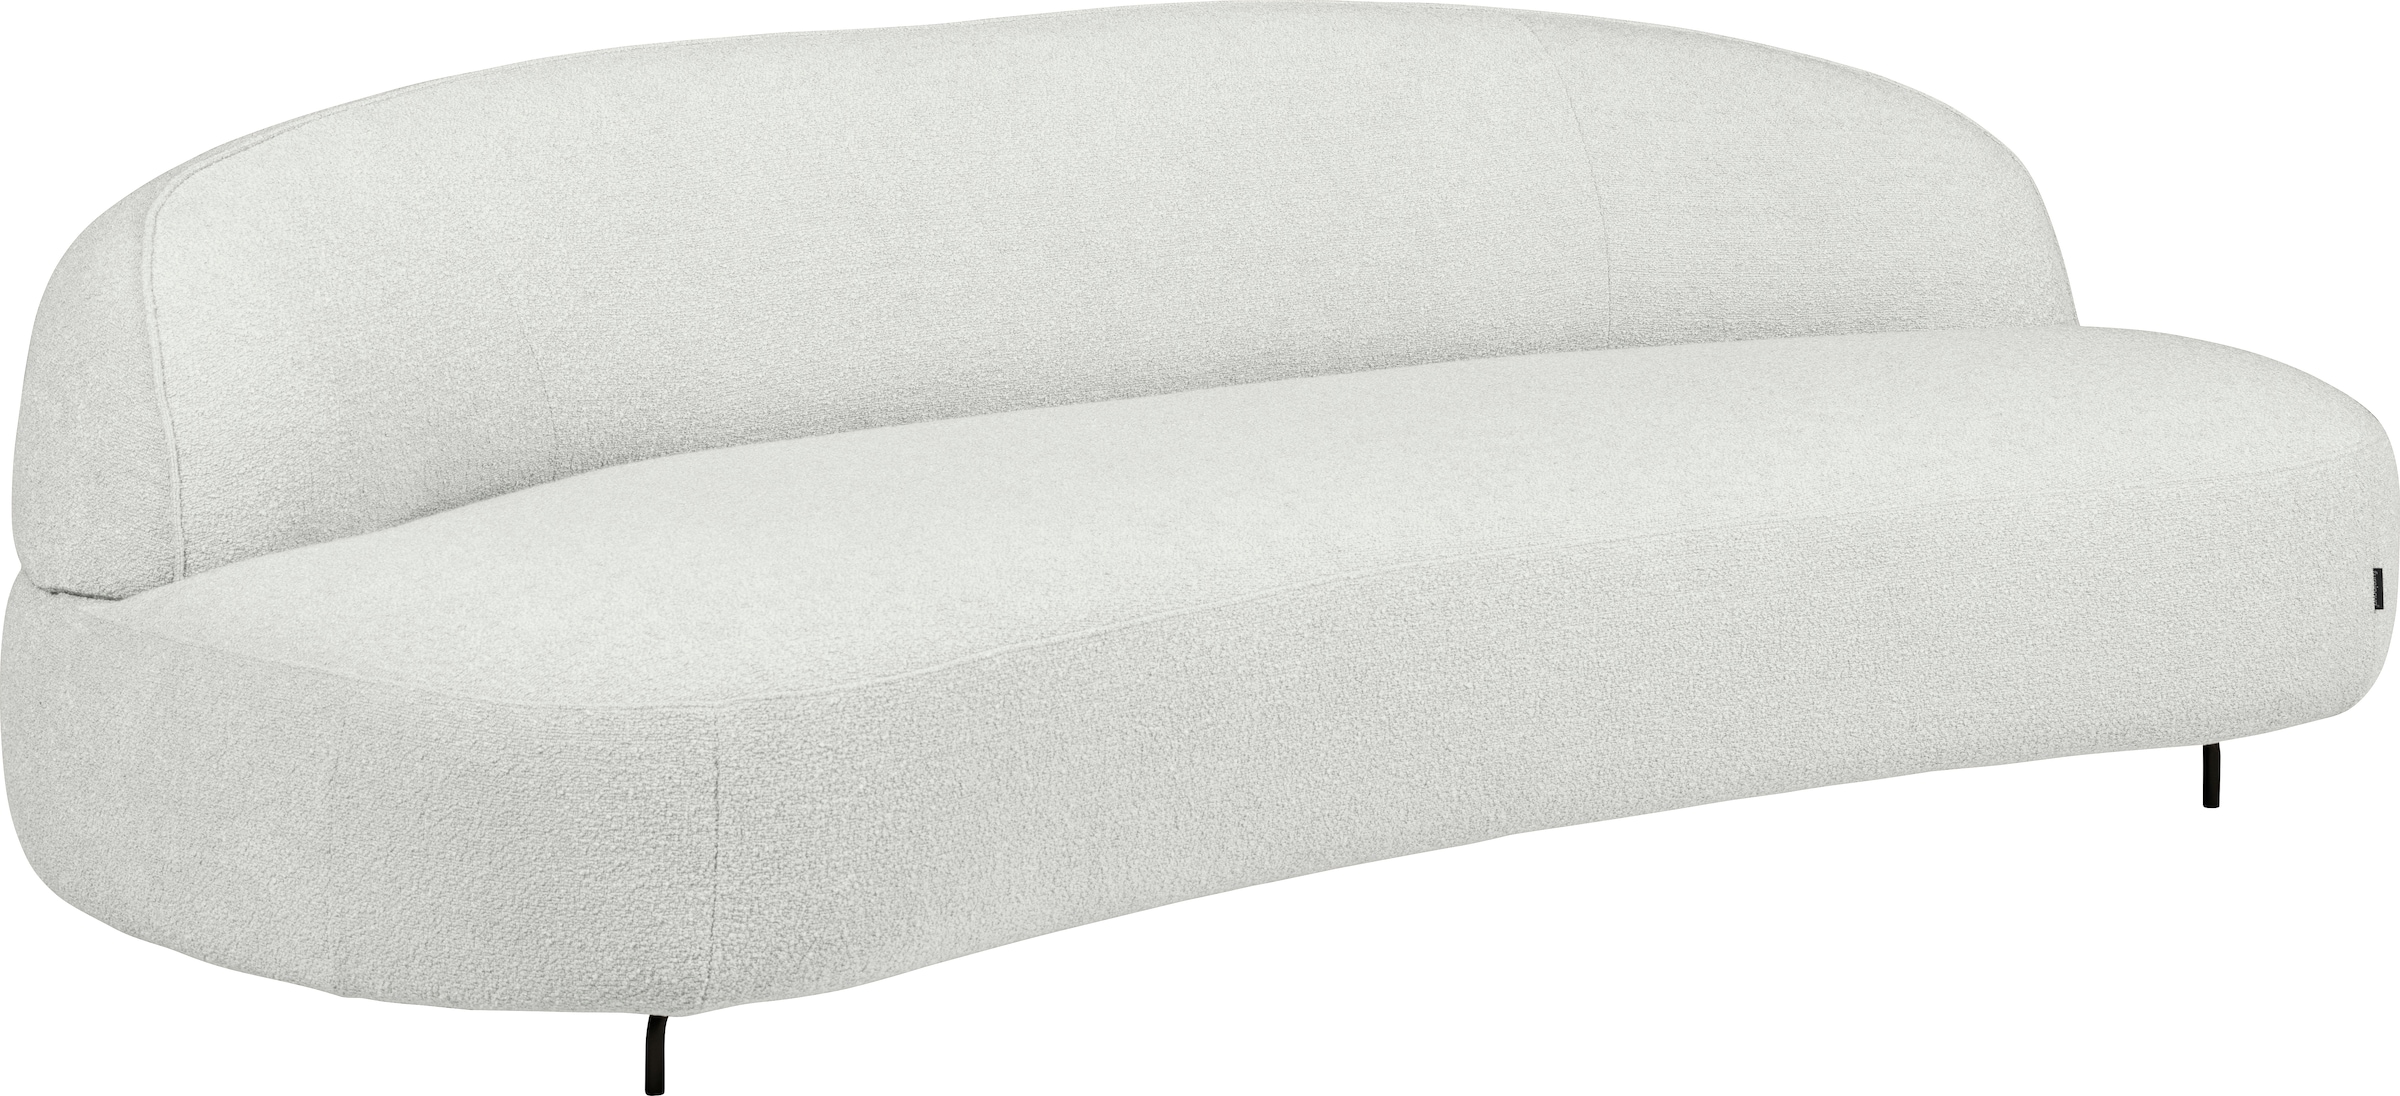 Sofa »Aria«, organisch geformt, im skandinsvischen Design